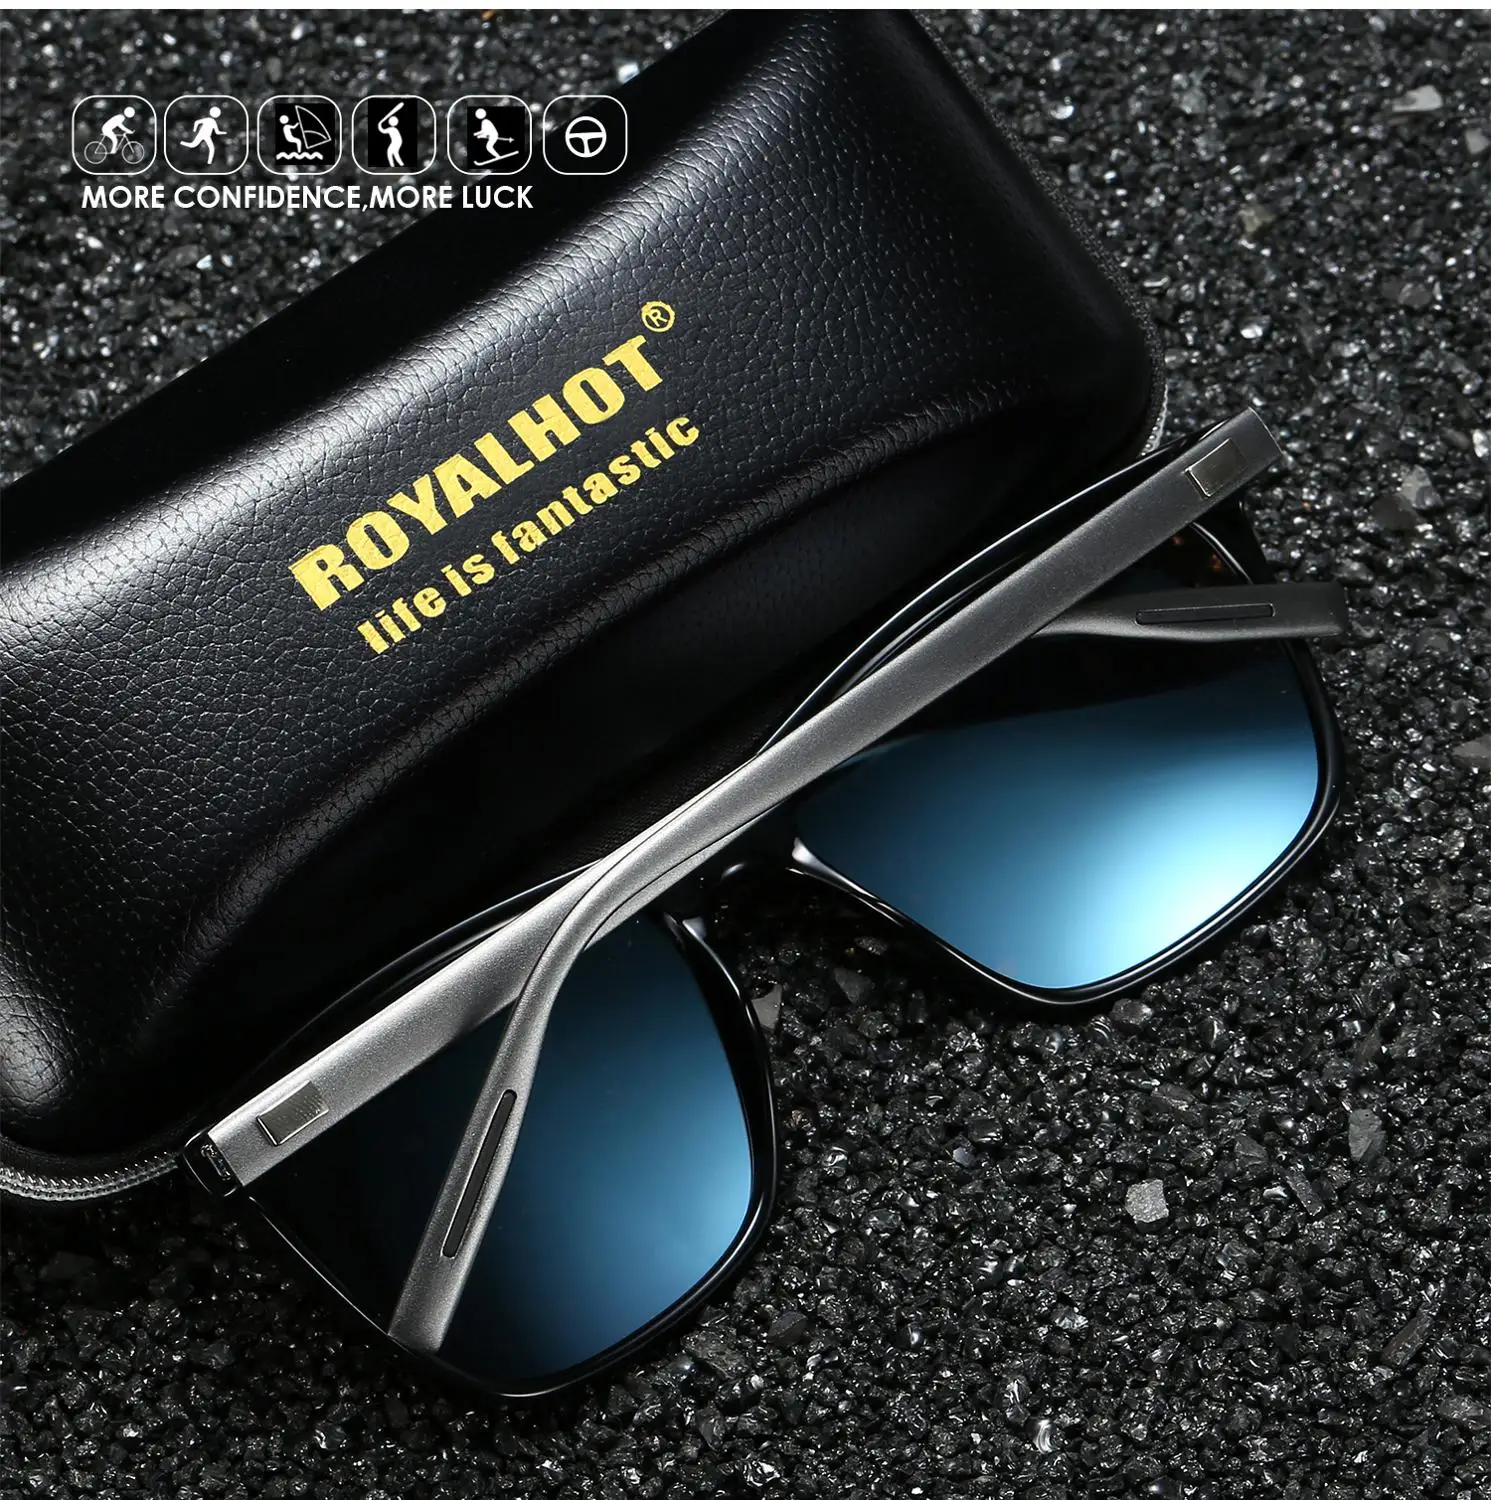 RoyalHot, поляризационные, квадратные, алюминиево-магниевая оправа, солнцезащитные очки для мужчин и женщин, для вождения, солнцезащитные очки, солнцезащитные очки, мужские очки, 90083